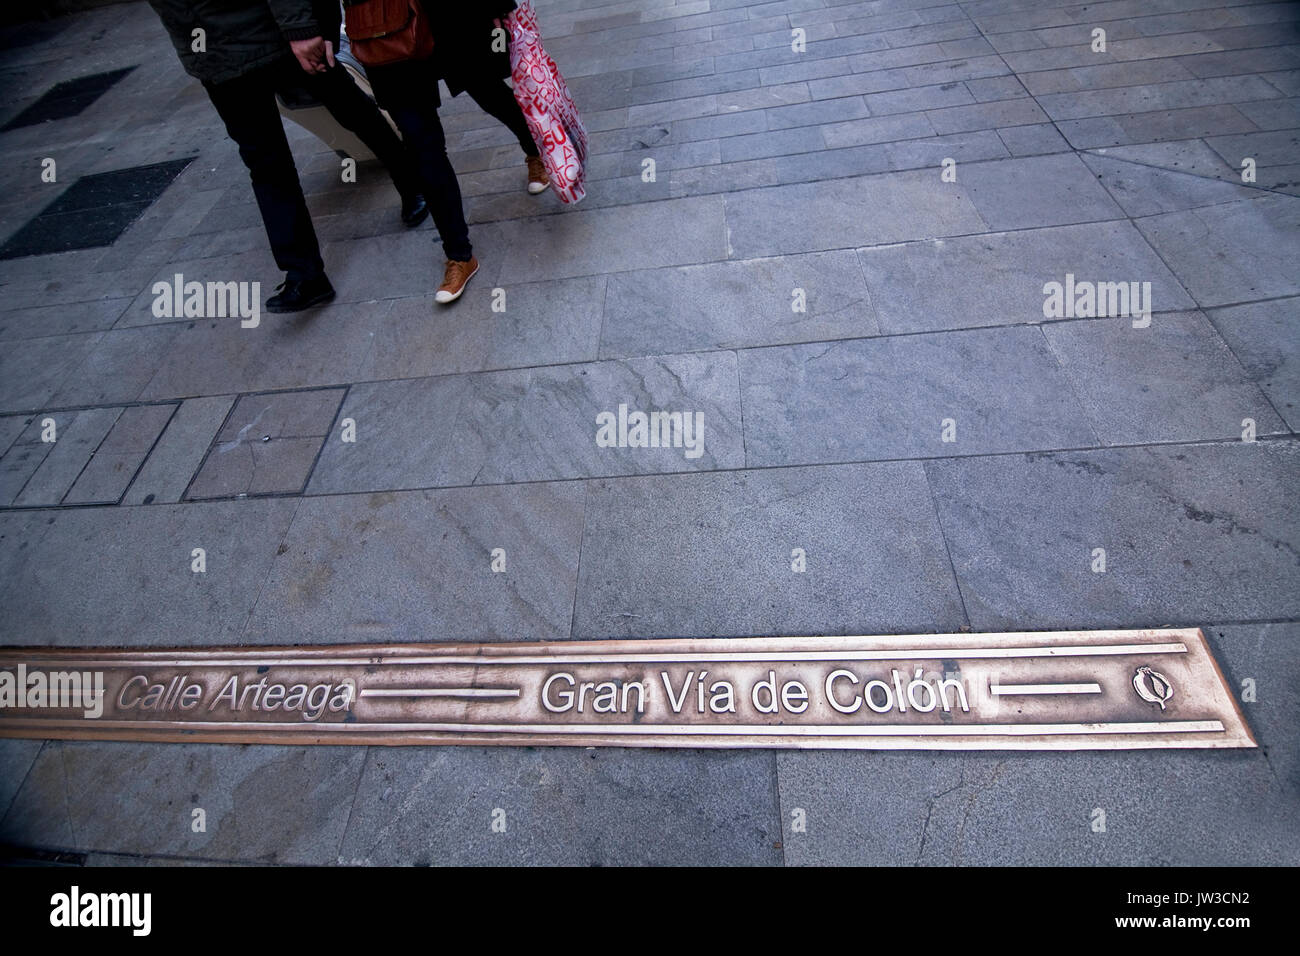 Indicazione del bronzo nel terreno indica nome della strada Prependicular alla croce di strade di Granada, Andalusia, Spagna Foto Stock